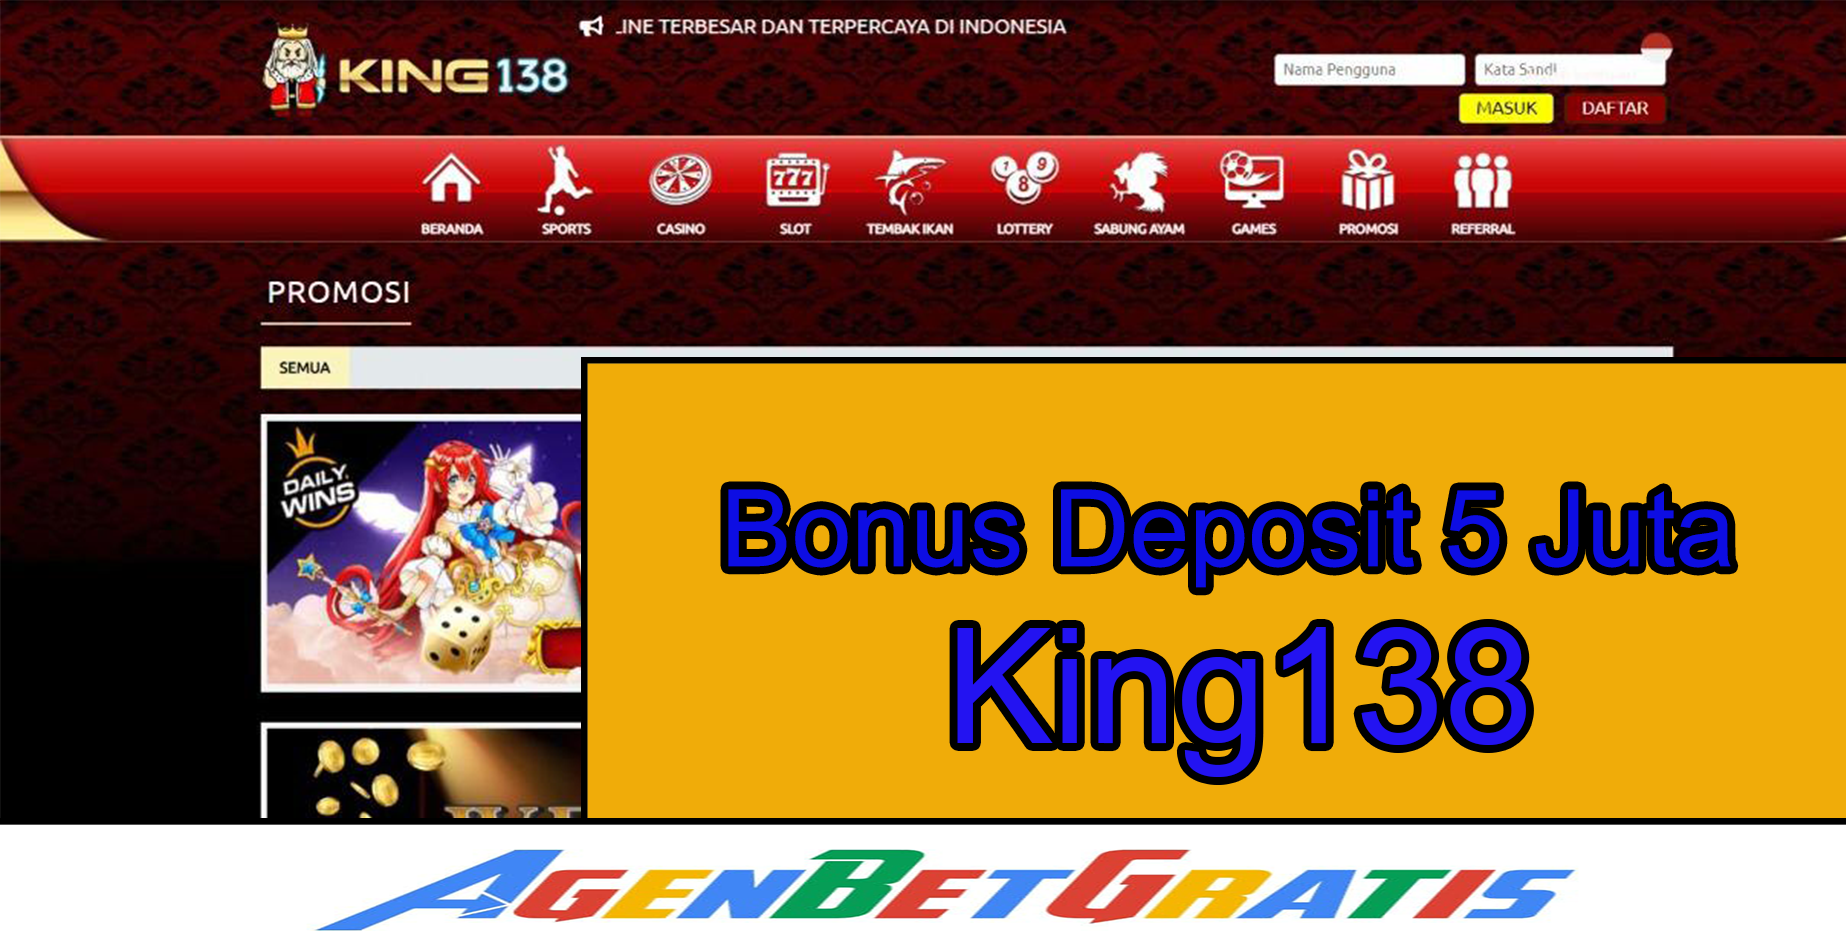 KING138 - Bonus Deposit 5 Juta